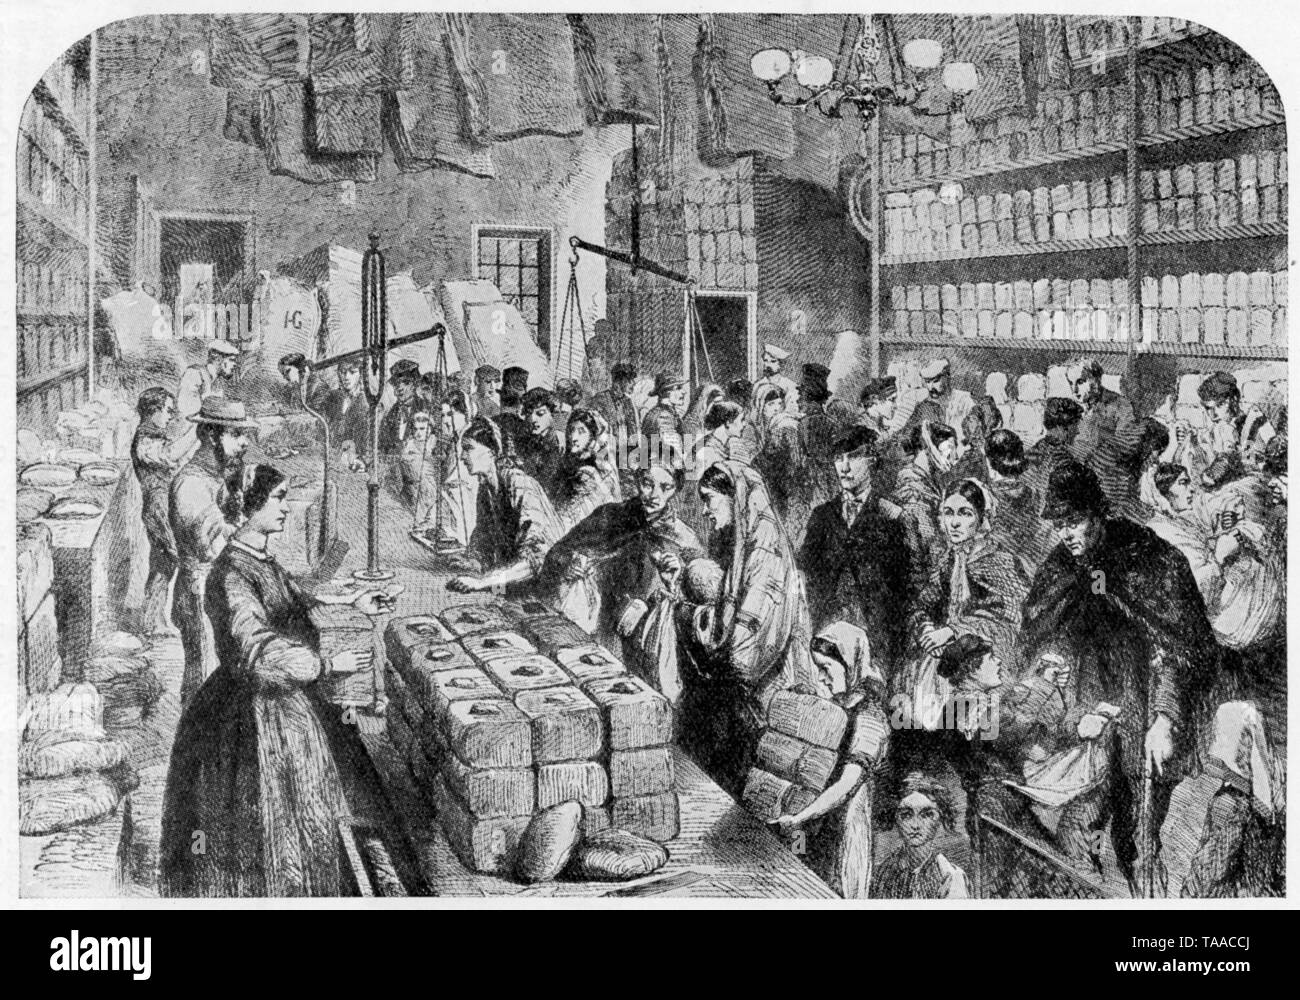 La scène au cours de la famine de coton dans le Lancashire', 1862. Plaque de l'Illustrated London News, 29 novembre 1863. La famine du coton a été une dépression dans l'industrie textile dans le nord-ouest de l'Angleterre, provoquée par l'interruption des importations de coton en provenance du Nord causés par la guerre civile américaine. Cette gravure représente une scène au Manchester Salford et prévoyance, qui a émis des billets à disposition pour aider à soulager la détresse. Banque D'Images